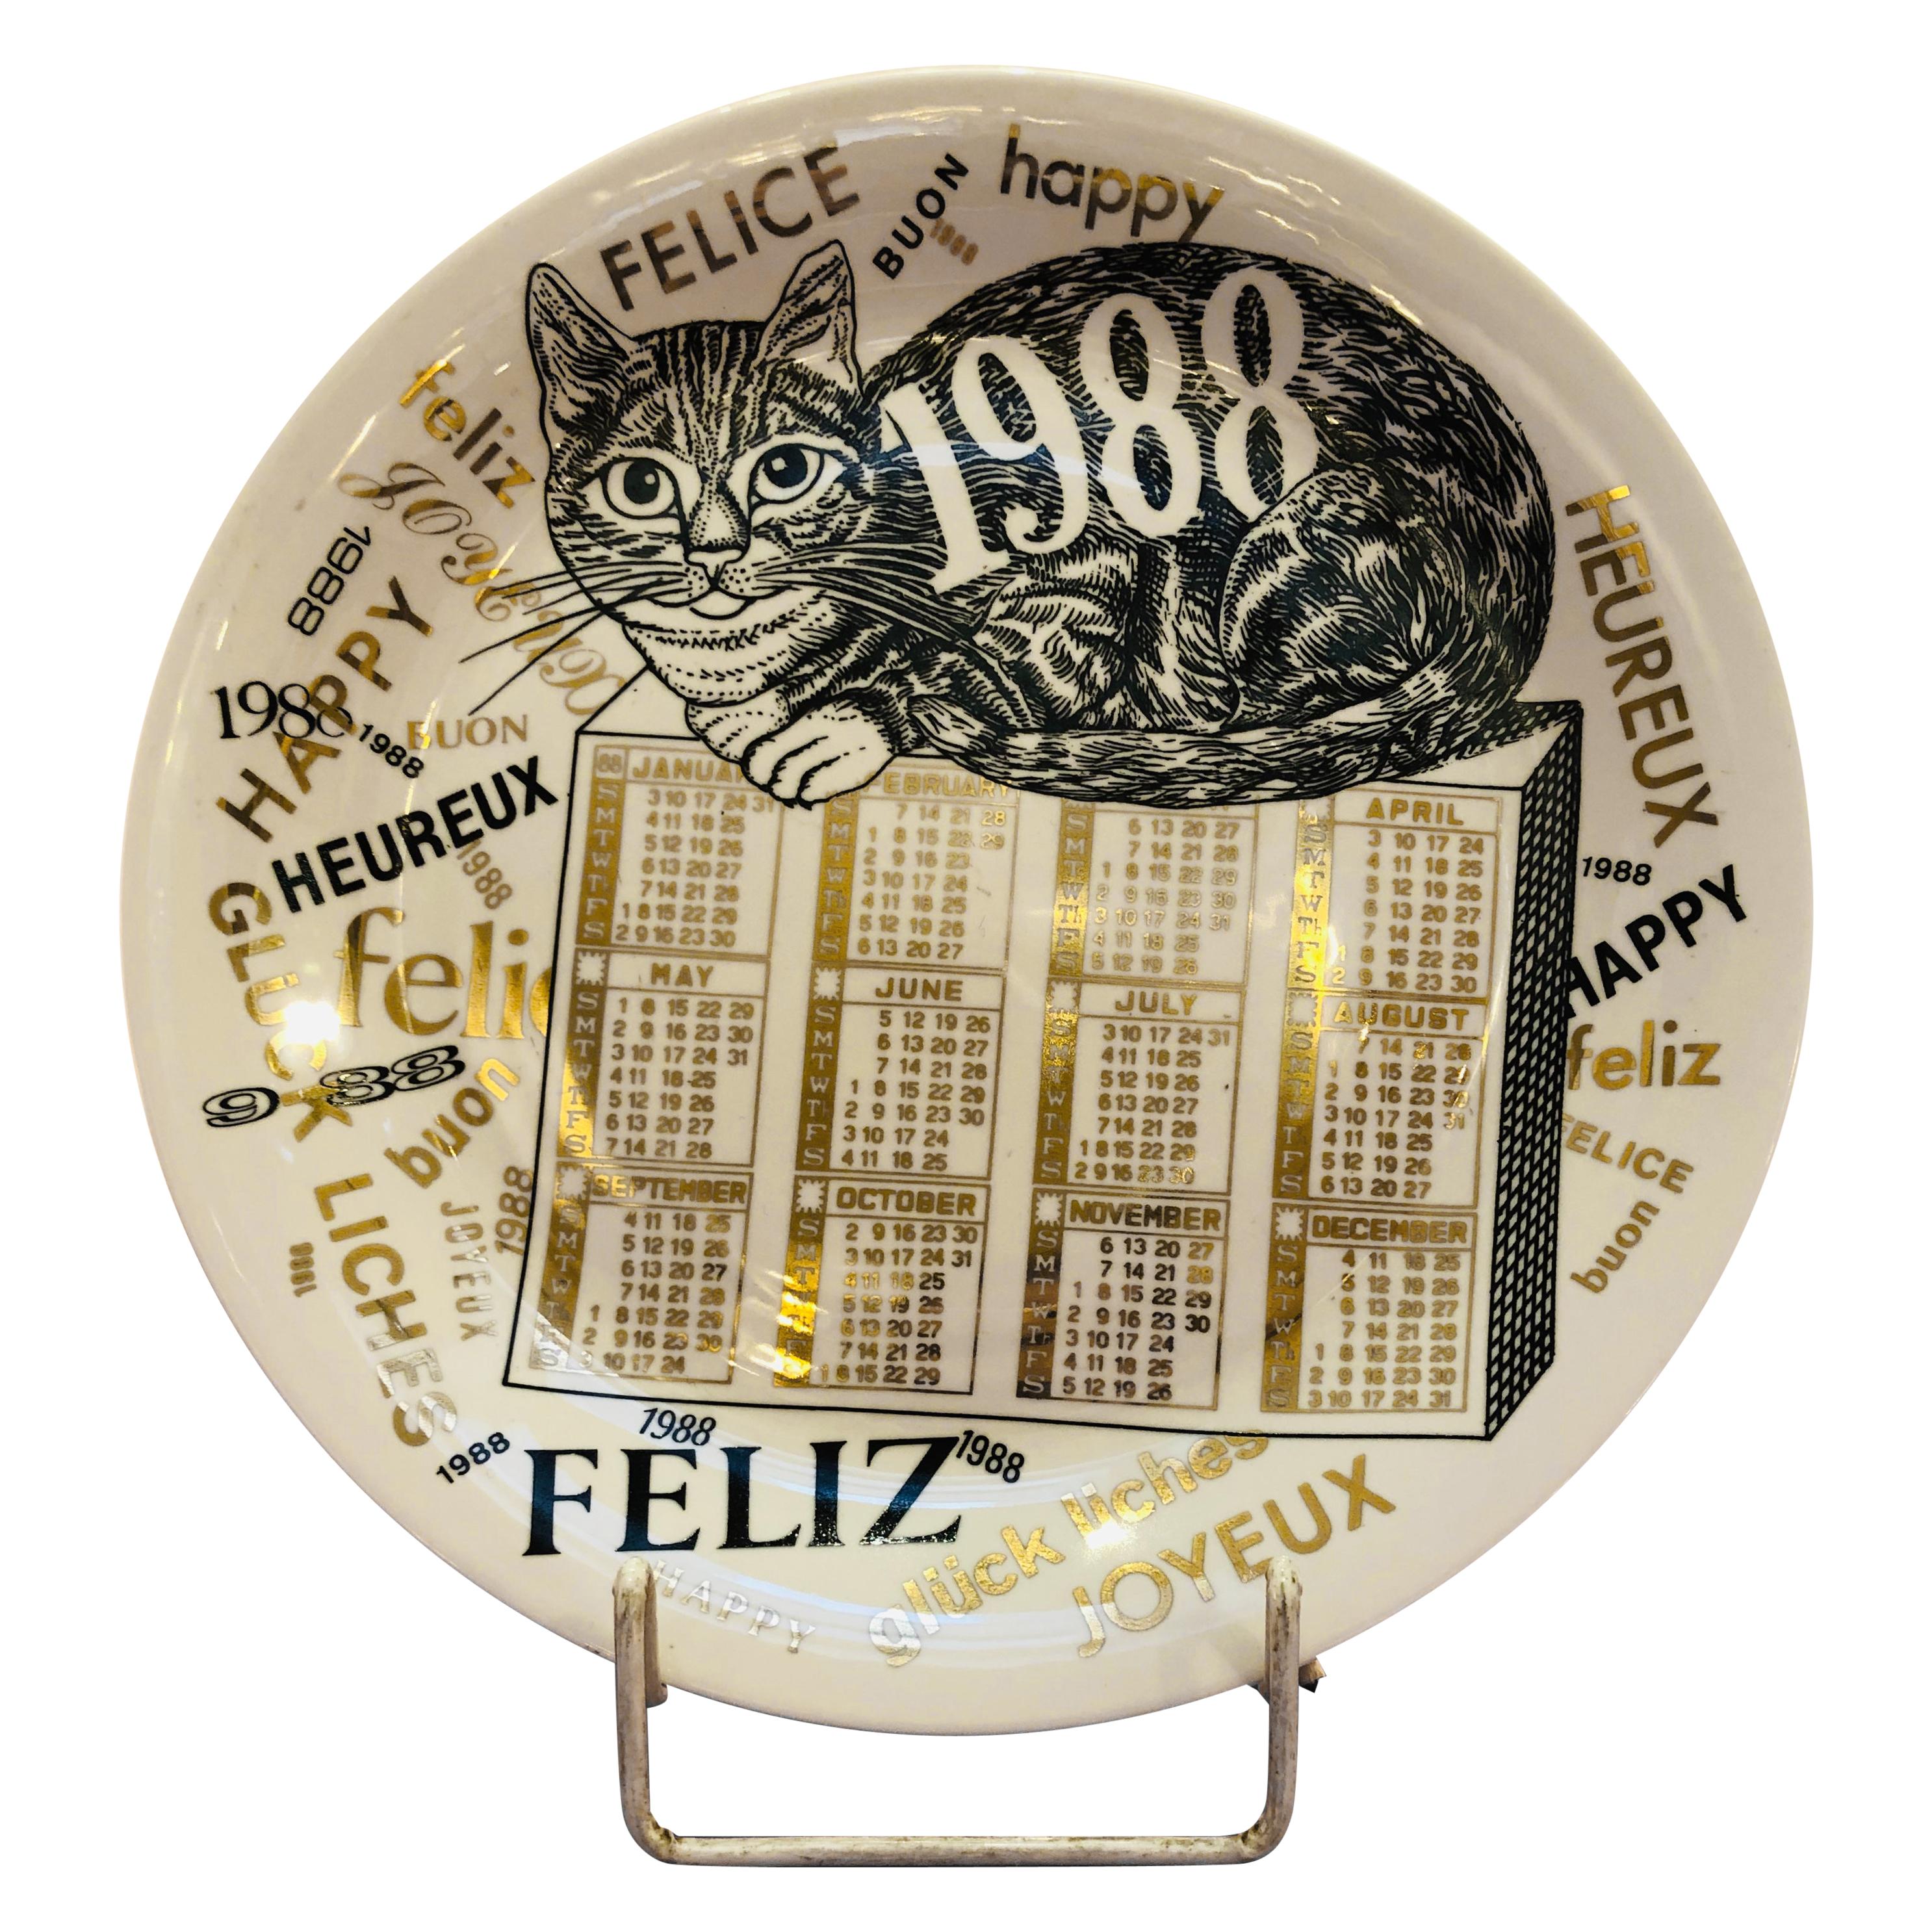 Assiette en porcelaine avec calendrier de Piero Fornasetti pour l'année 1988